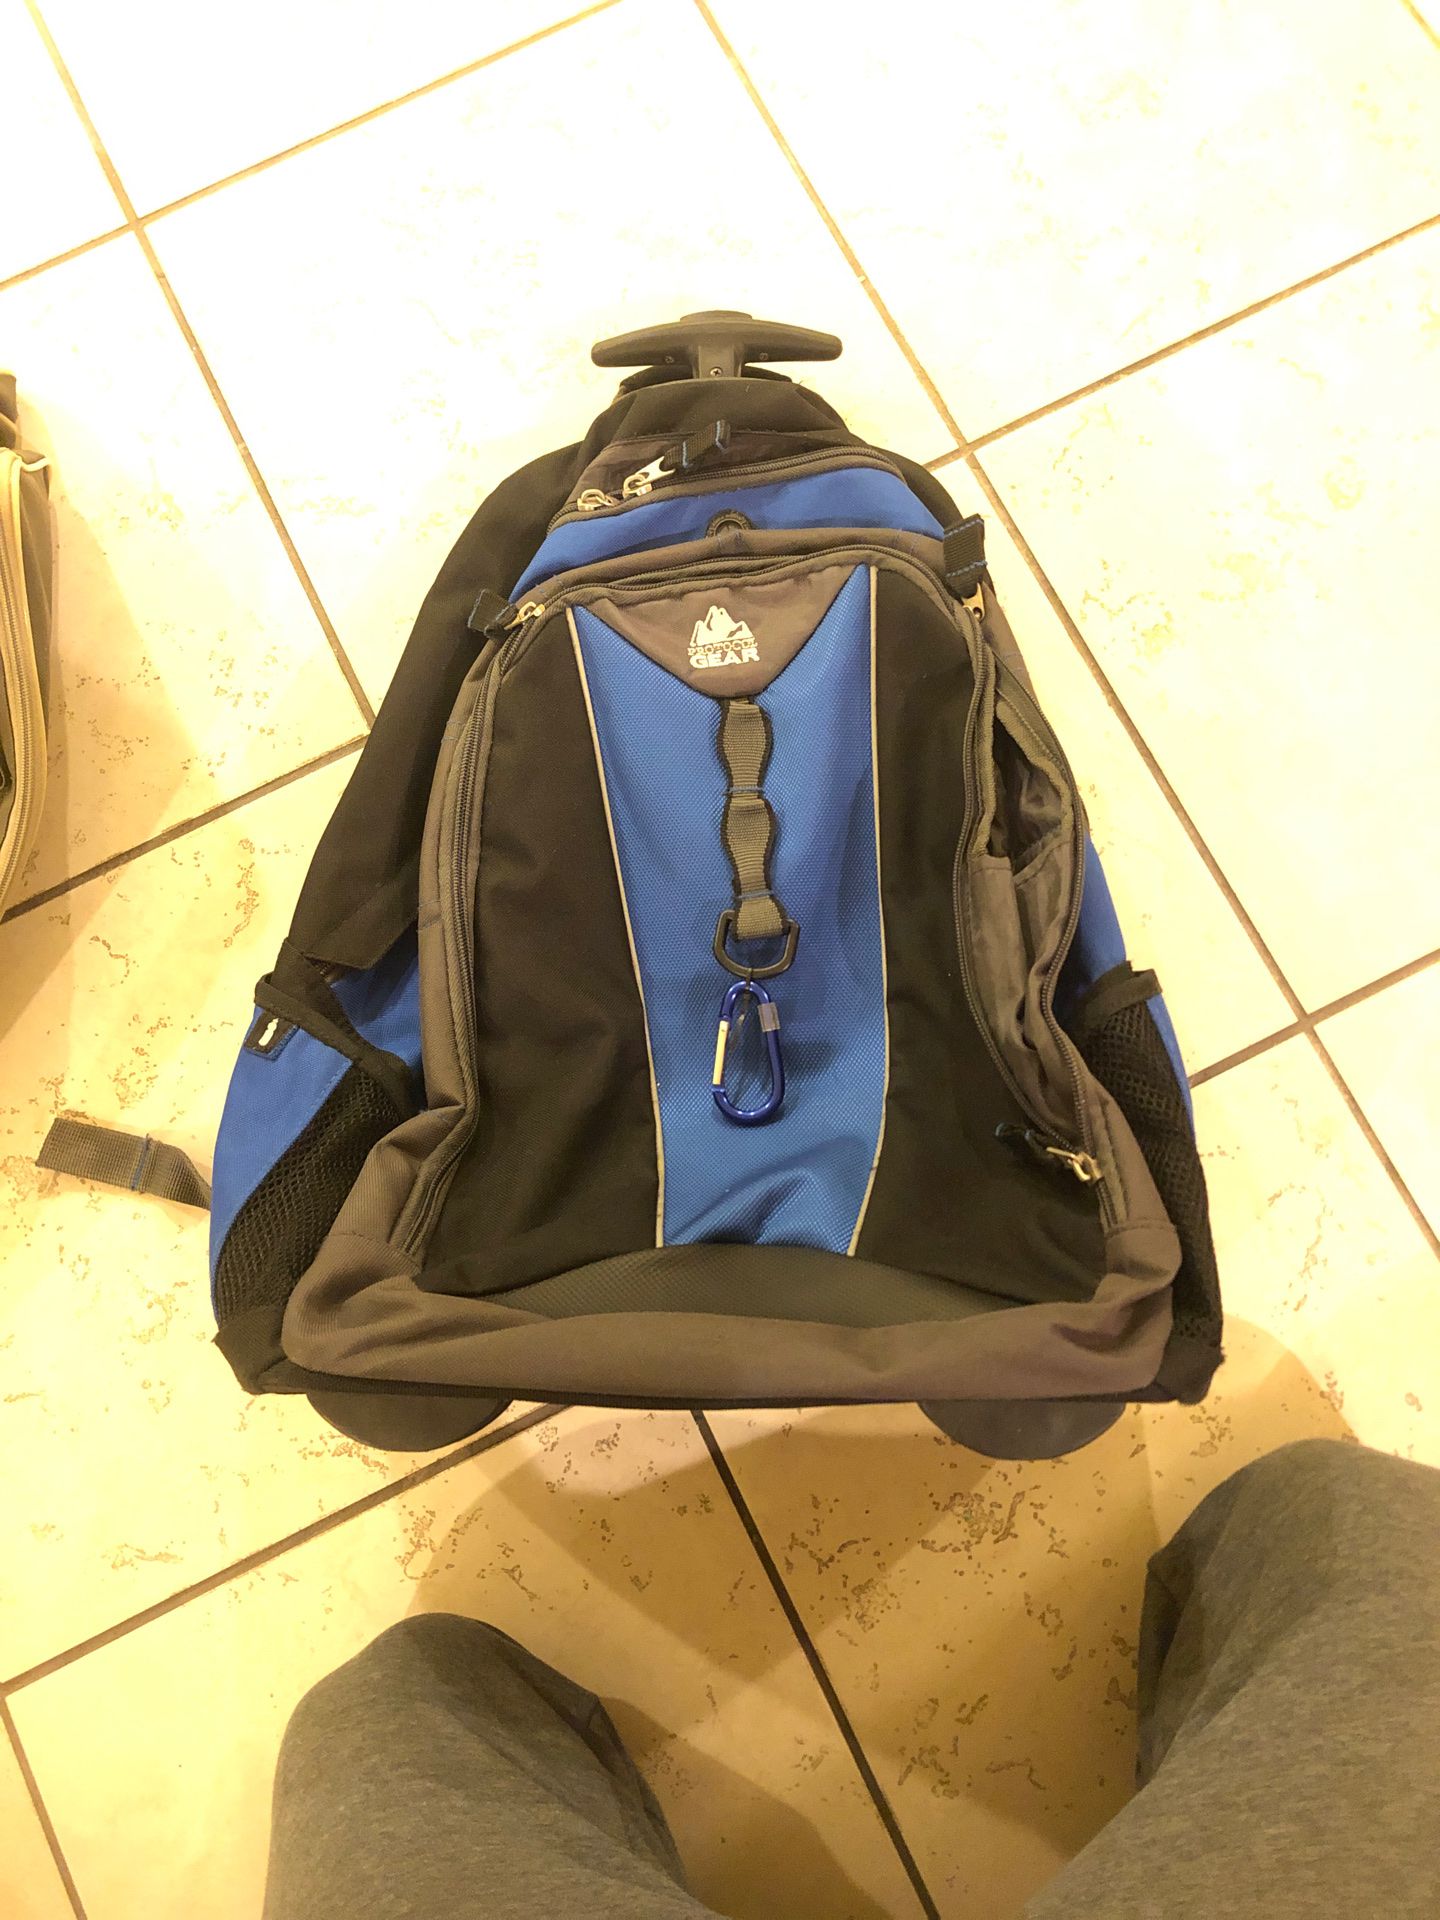 Backpack blue